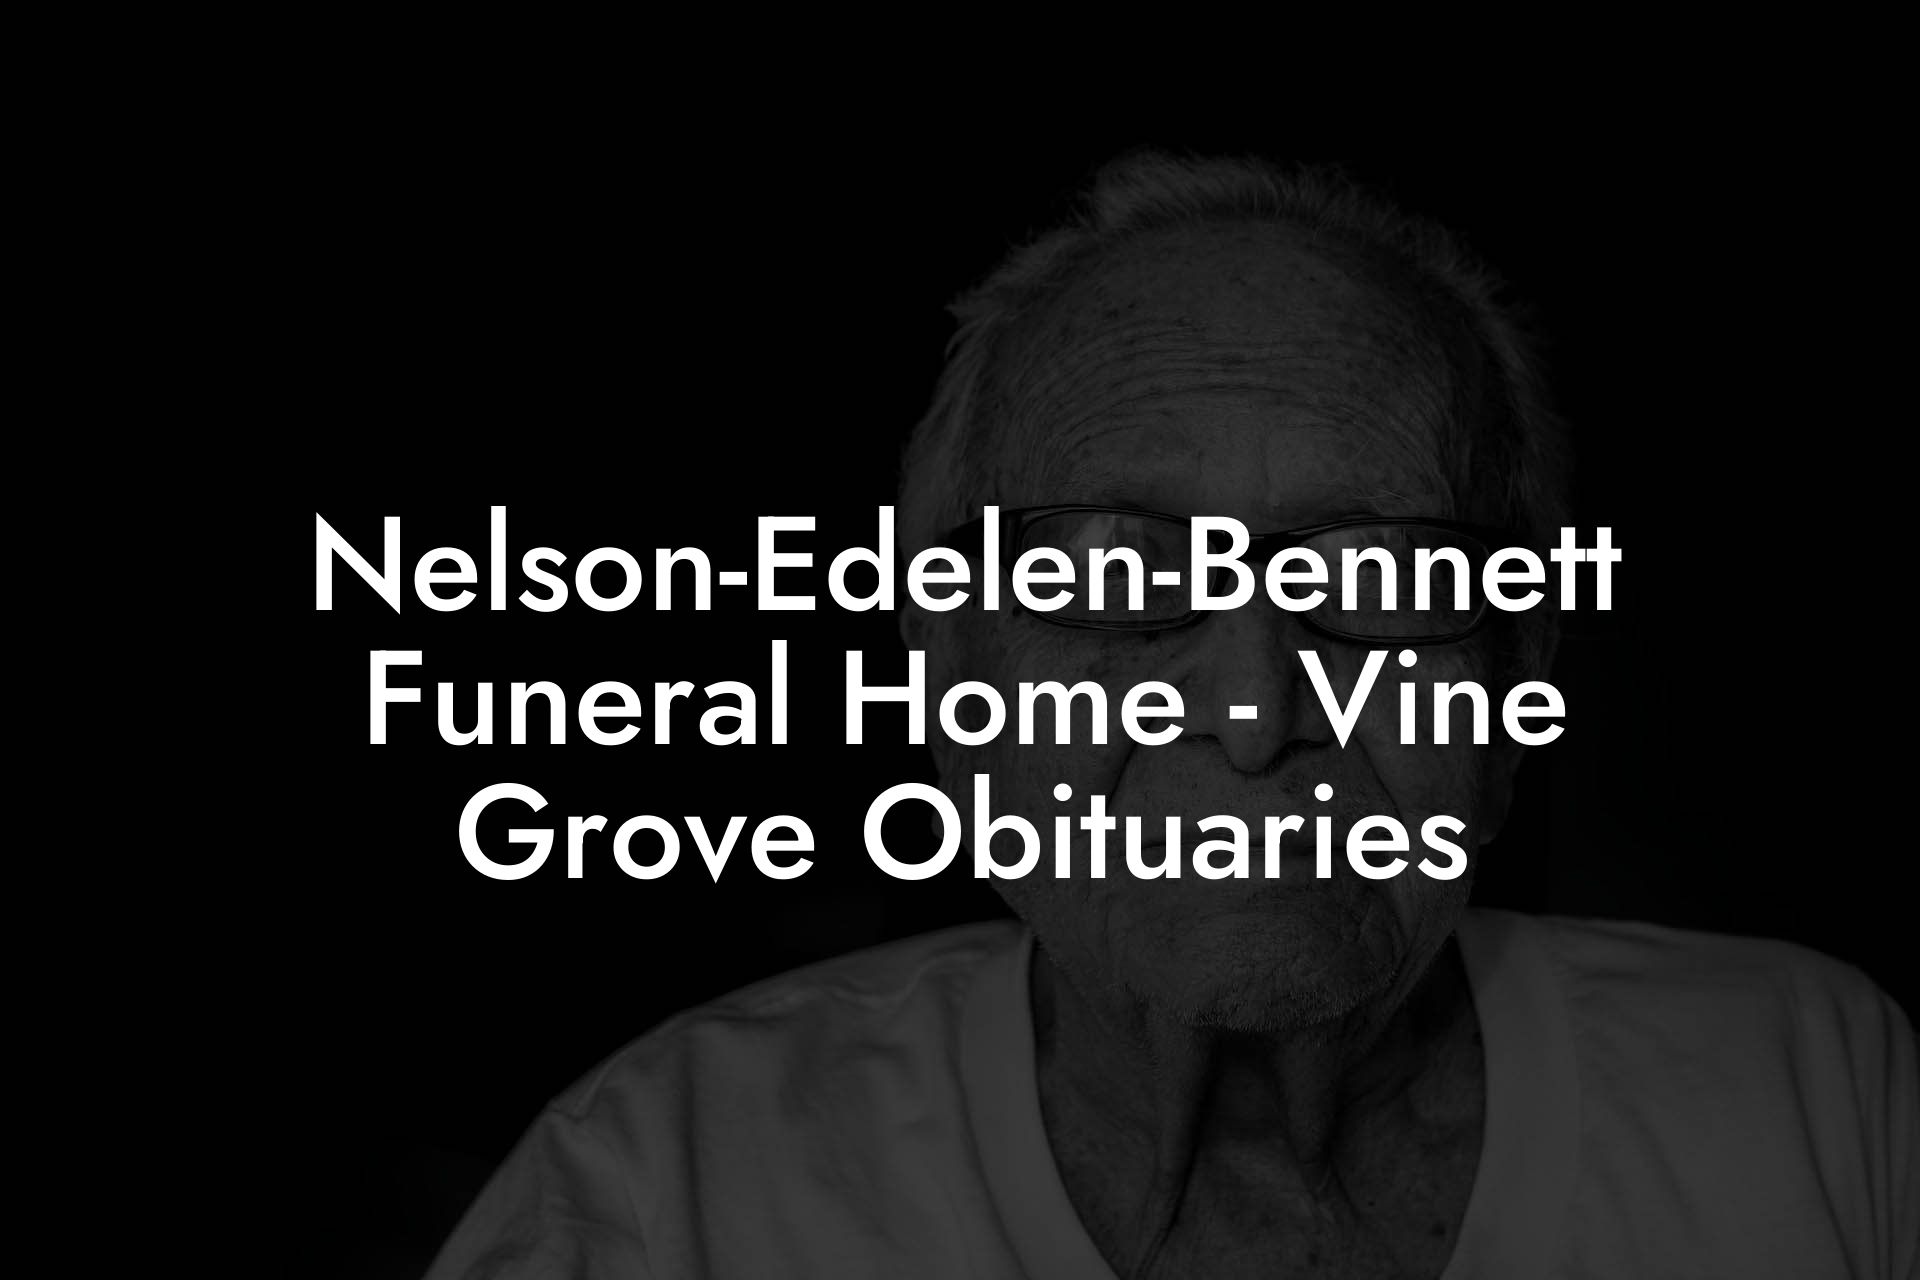 Nelson-Edelen-Bennett Funeral Home - Vine Grove Obituaries